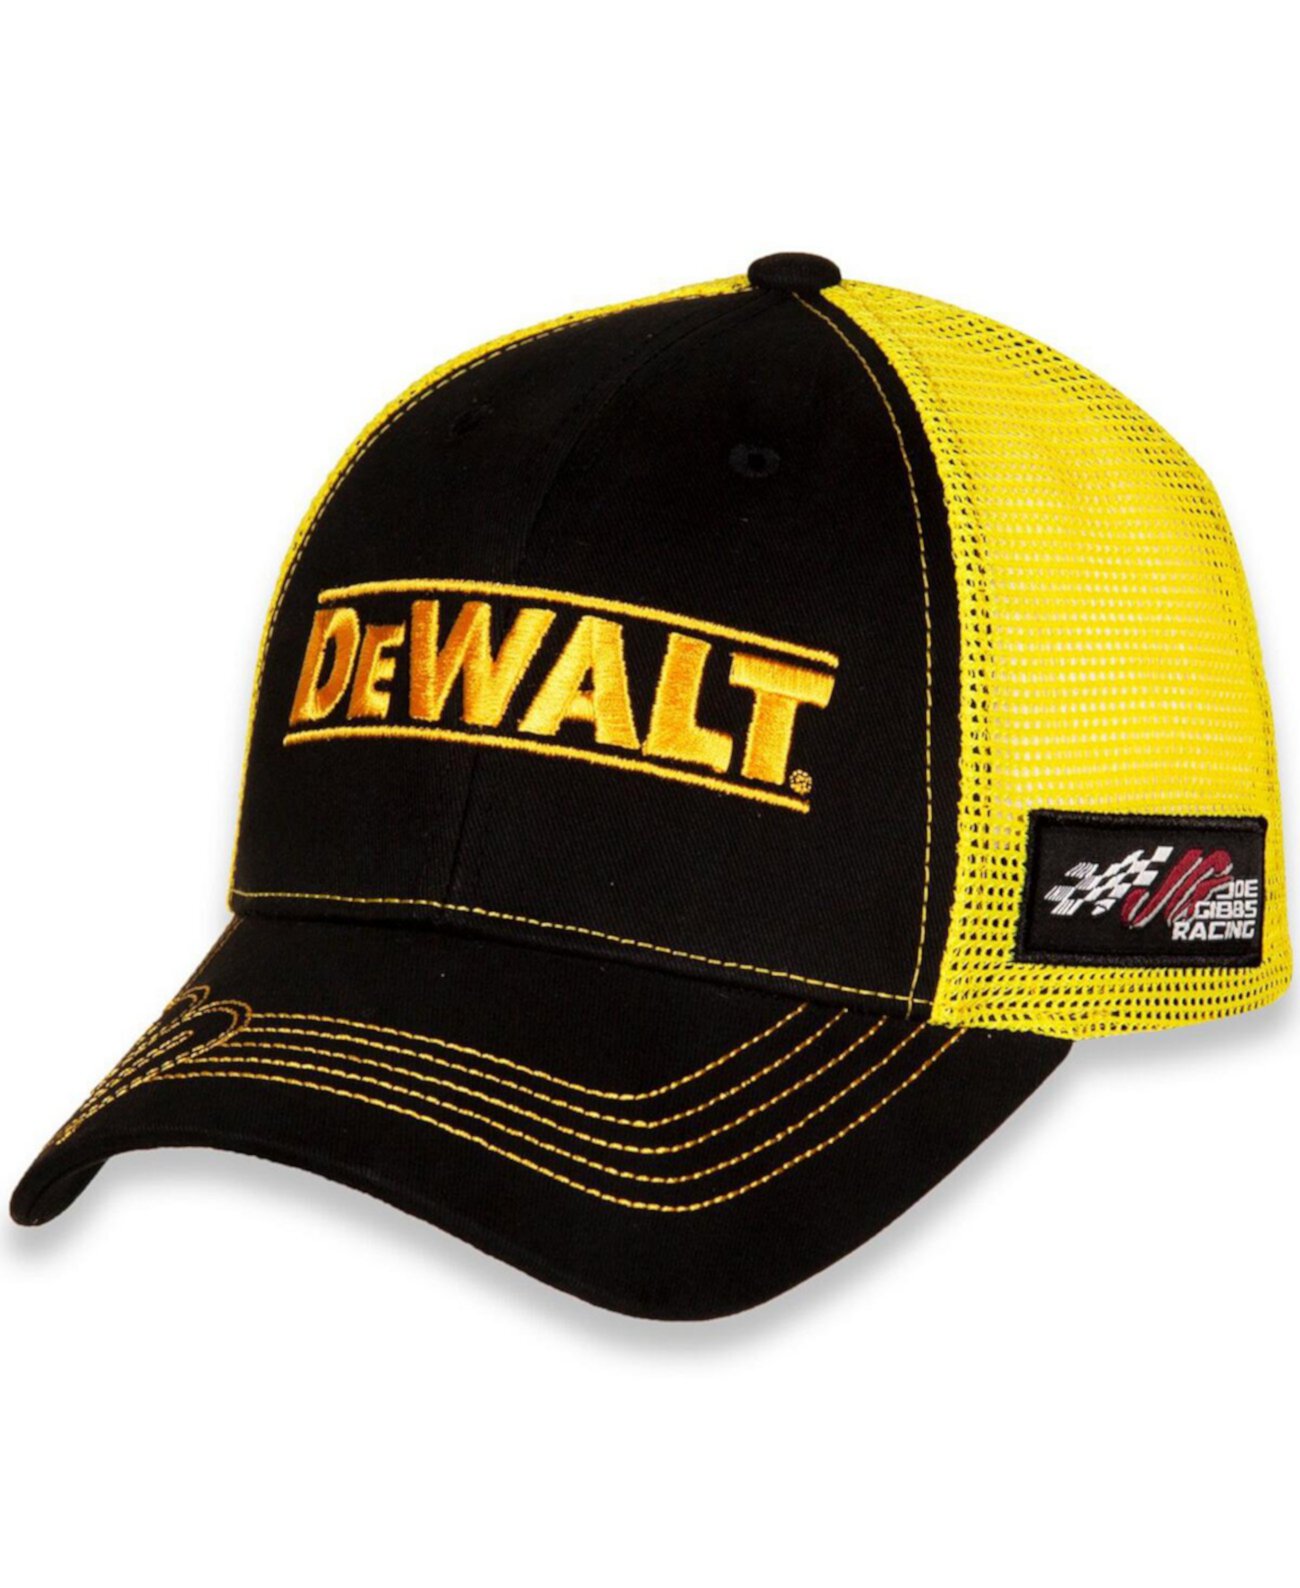 Мужская регулируемая шляпа Christopher Bell DeWalt черного, золотого цвета Joe Gibbs Racing Team Collection